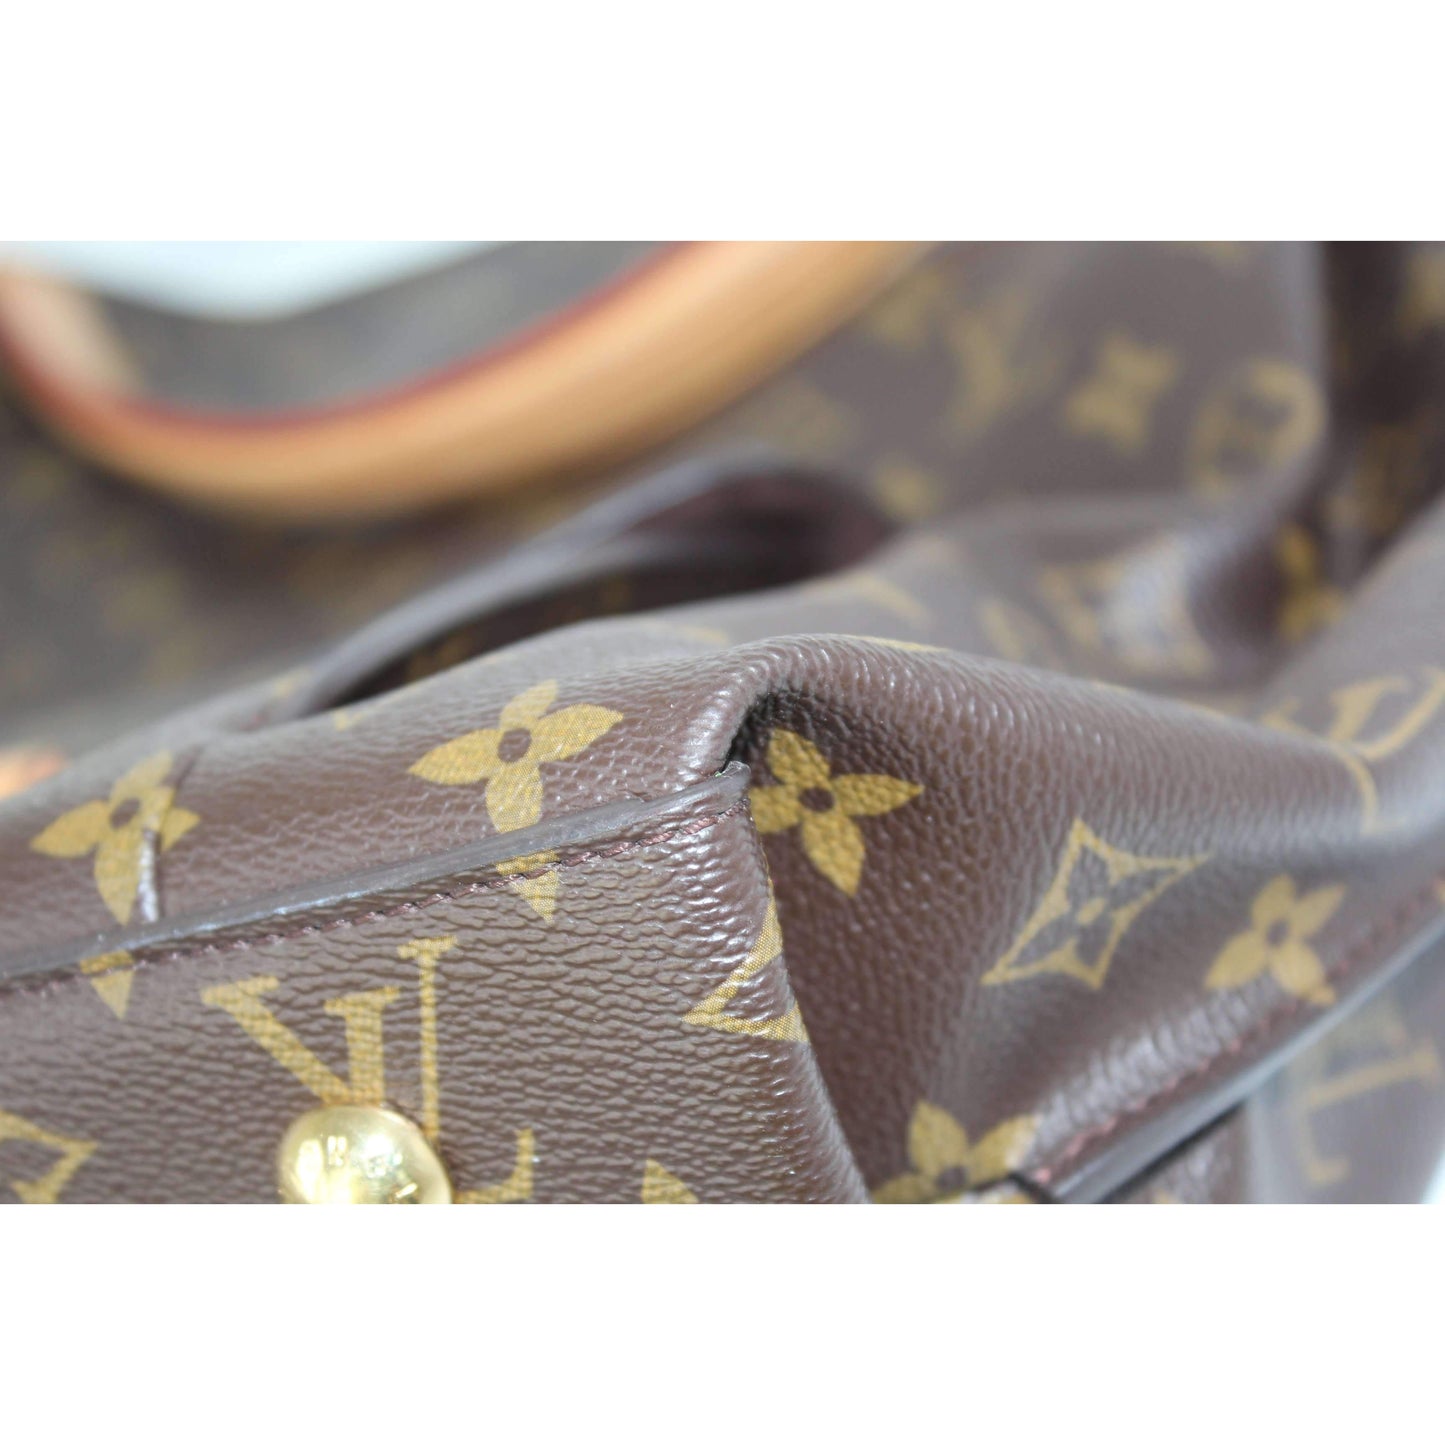 Load image into Gallery viewer, Louis Vuitton Louis Vuitton Metis Hobo Monogram Bag LVBagaholic
